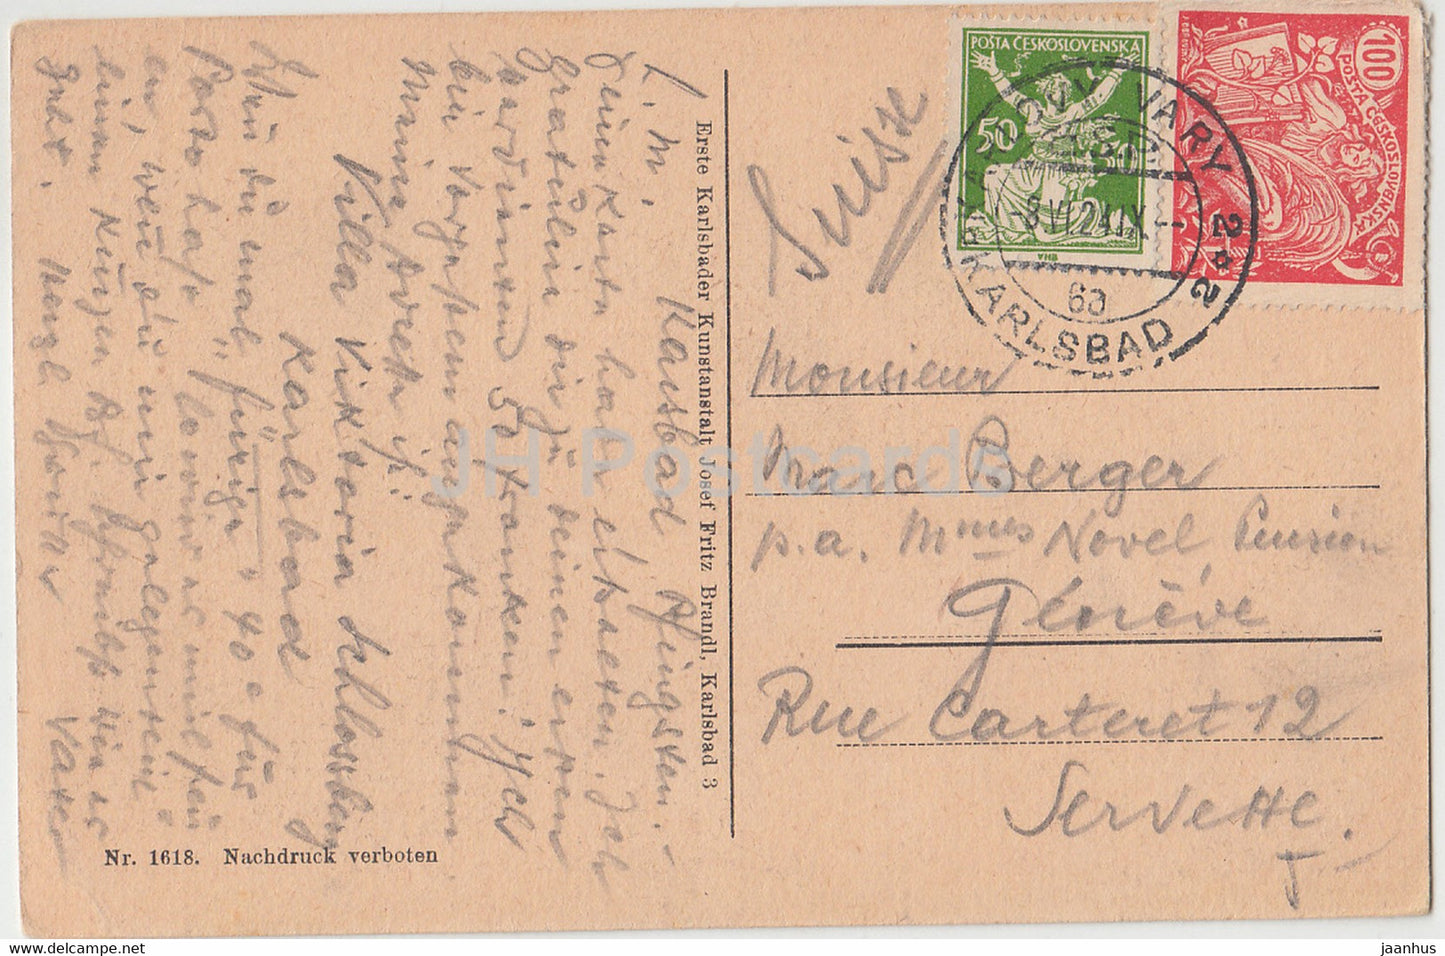 Karlsbad - Karlsbad - Alte u Neue Wiese - 1618 - alte Postkarte - 1924 - Tschechoslowakei - Tschechische Republik - gebraucht